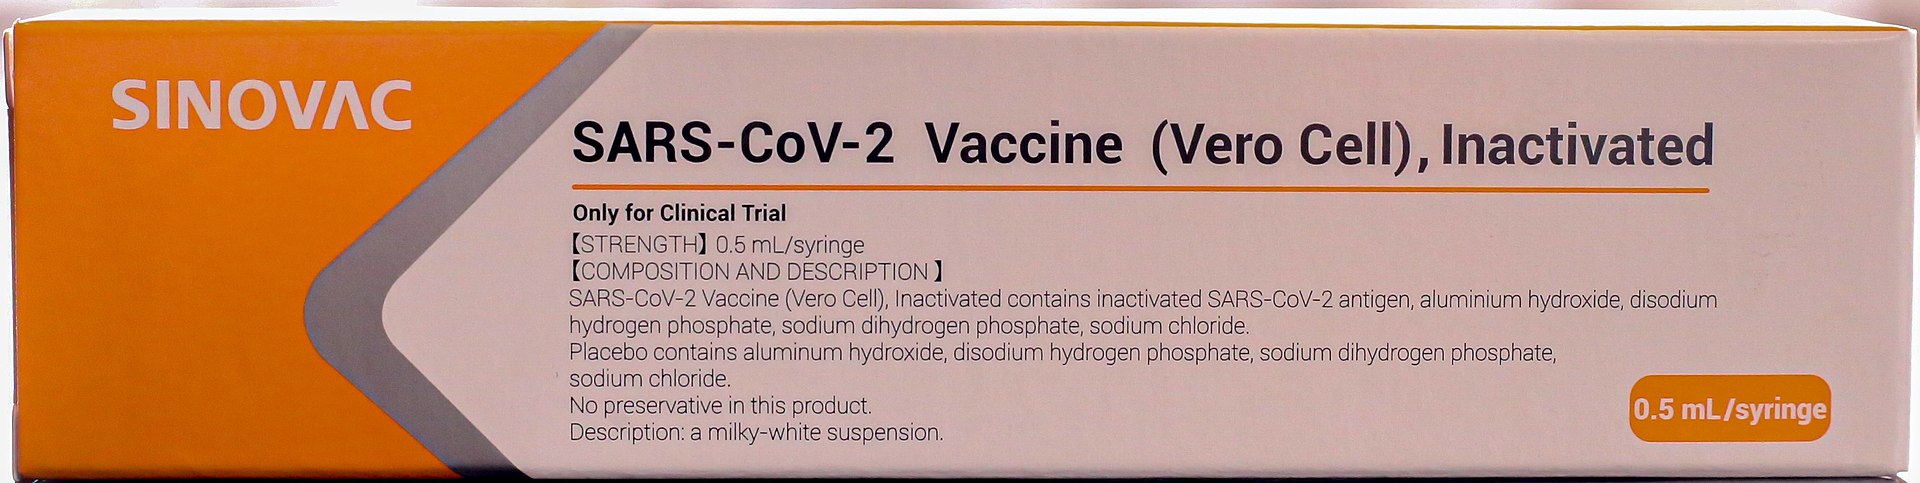 ข้อมูลเกี่ยวกับวัคซีน CoronaVac Covid-19 ของจีน